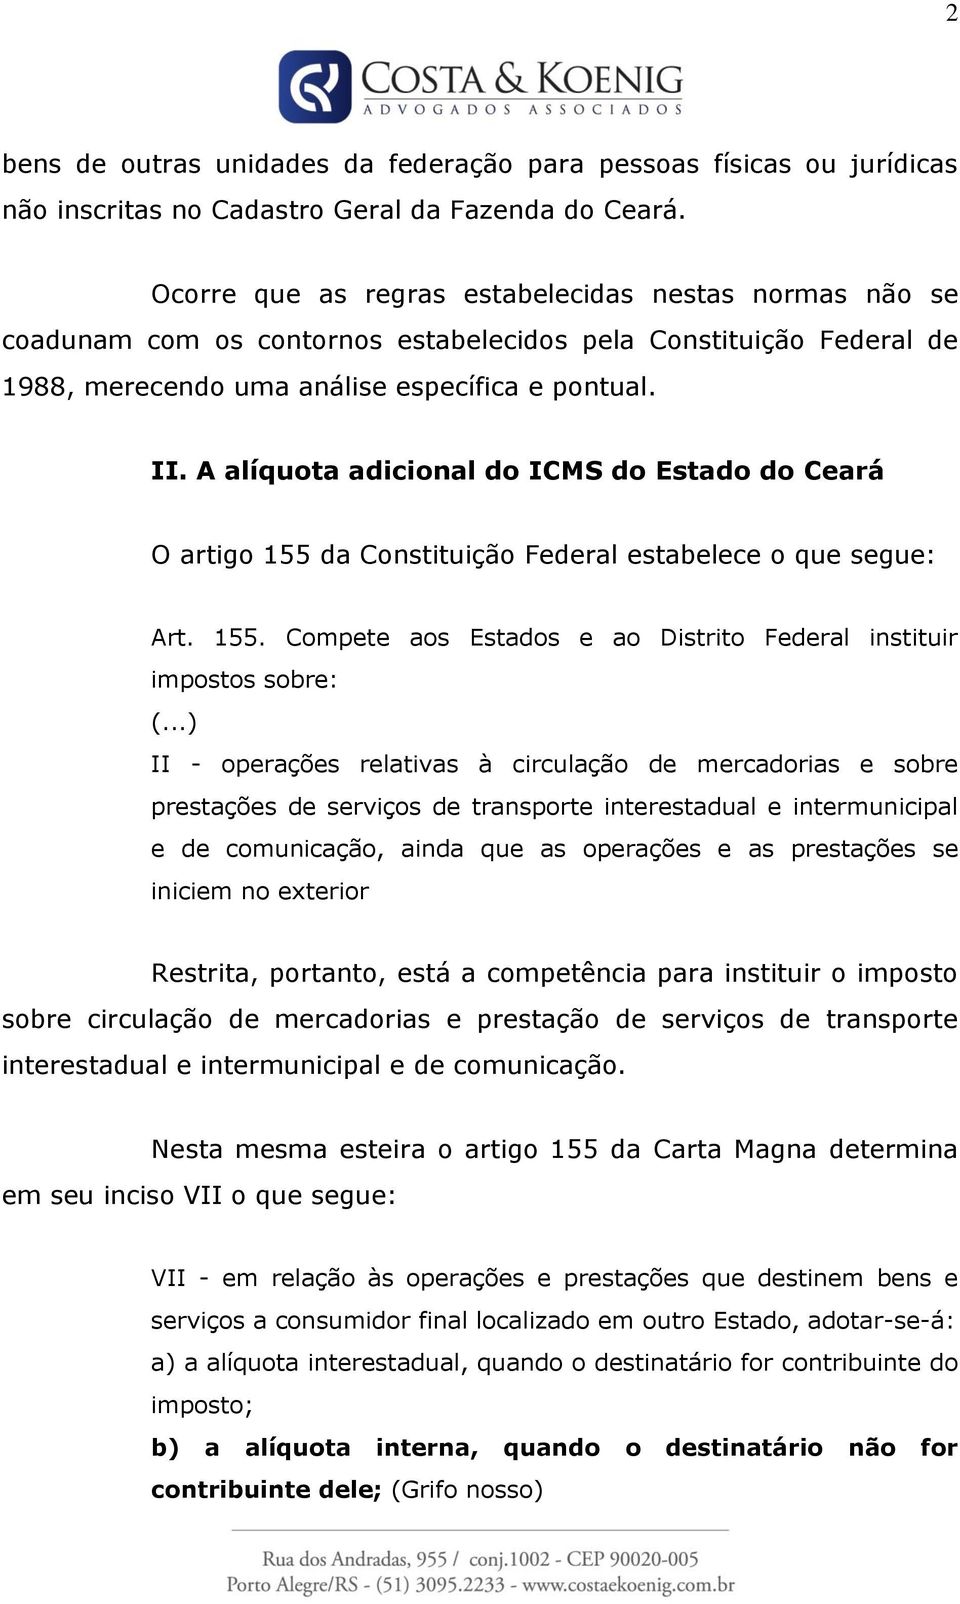 A alíquota adicional do ICMS do Estado do Ceará O artigo 155 da Constituição Federal estabelece o que segue: Art. 155. Compete aos Estados e ao Distrito Federal instituir impostos sobre: (.